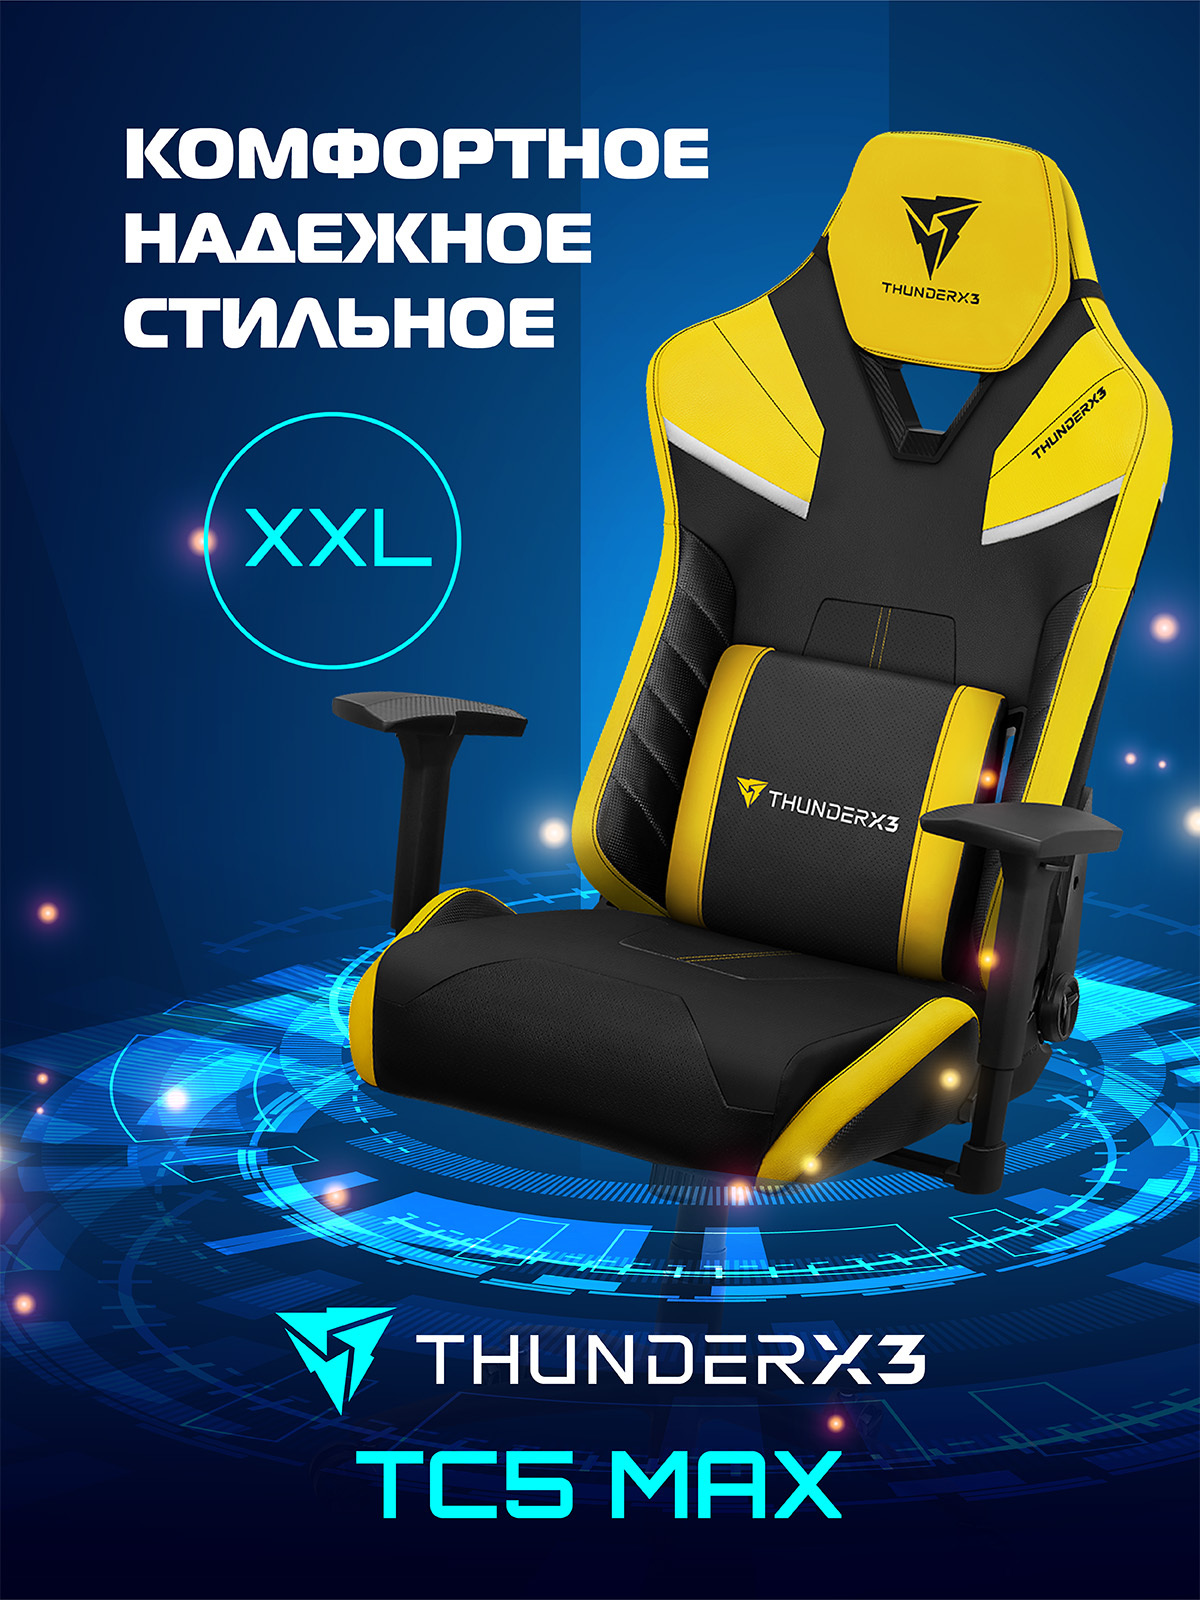 Кресло компьютерное игровое thunderx3 tc5 Limited Edition